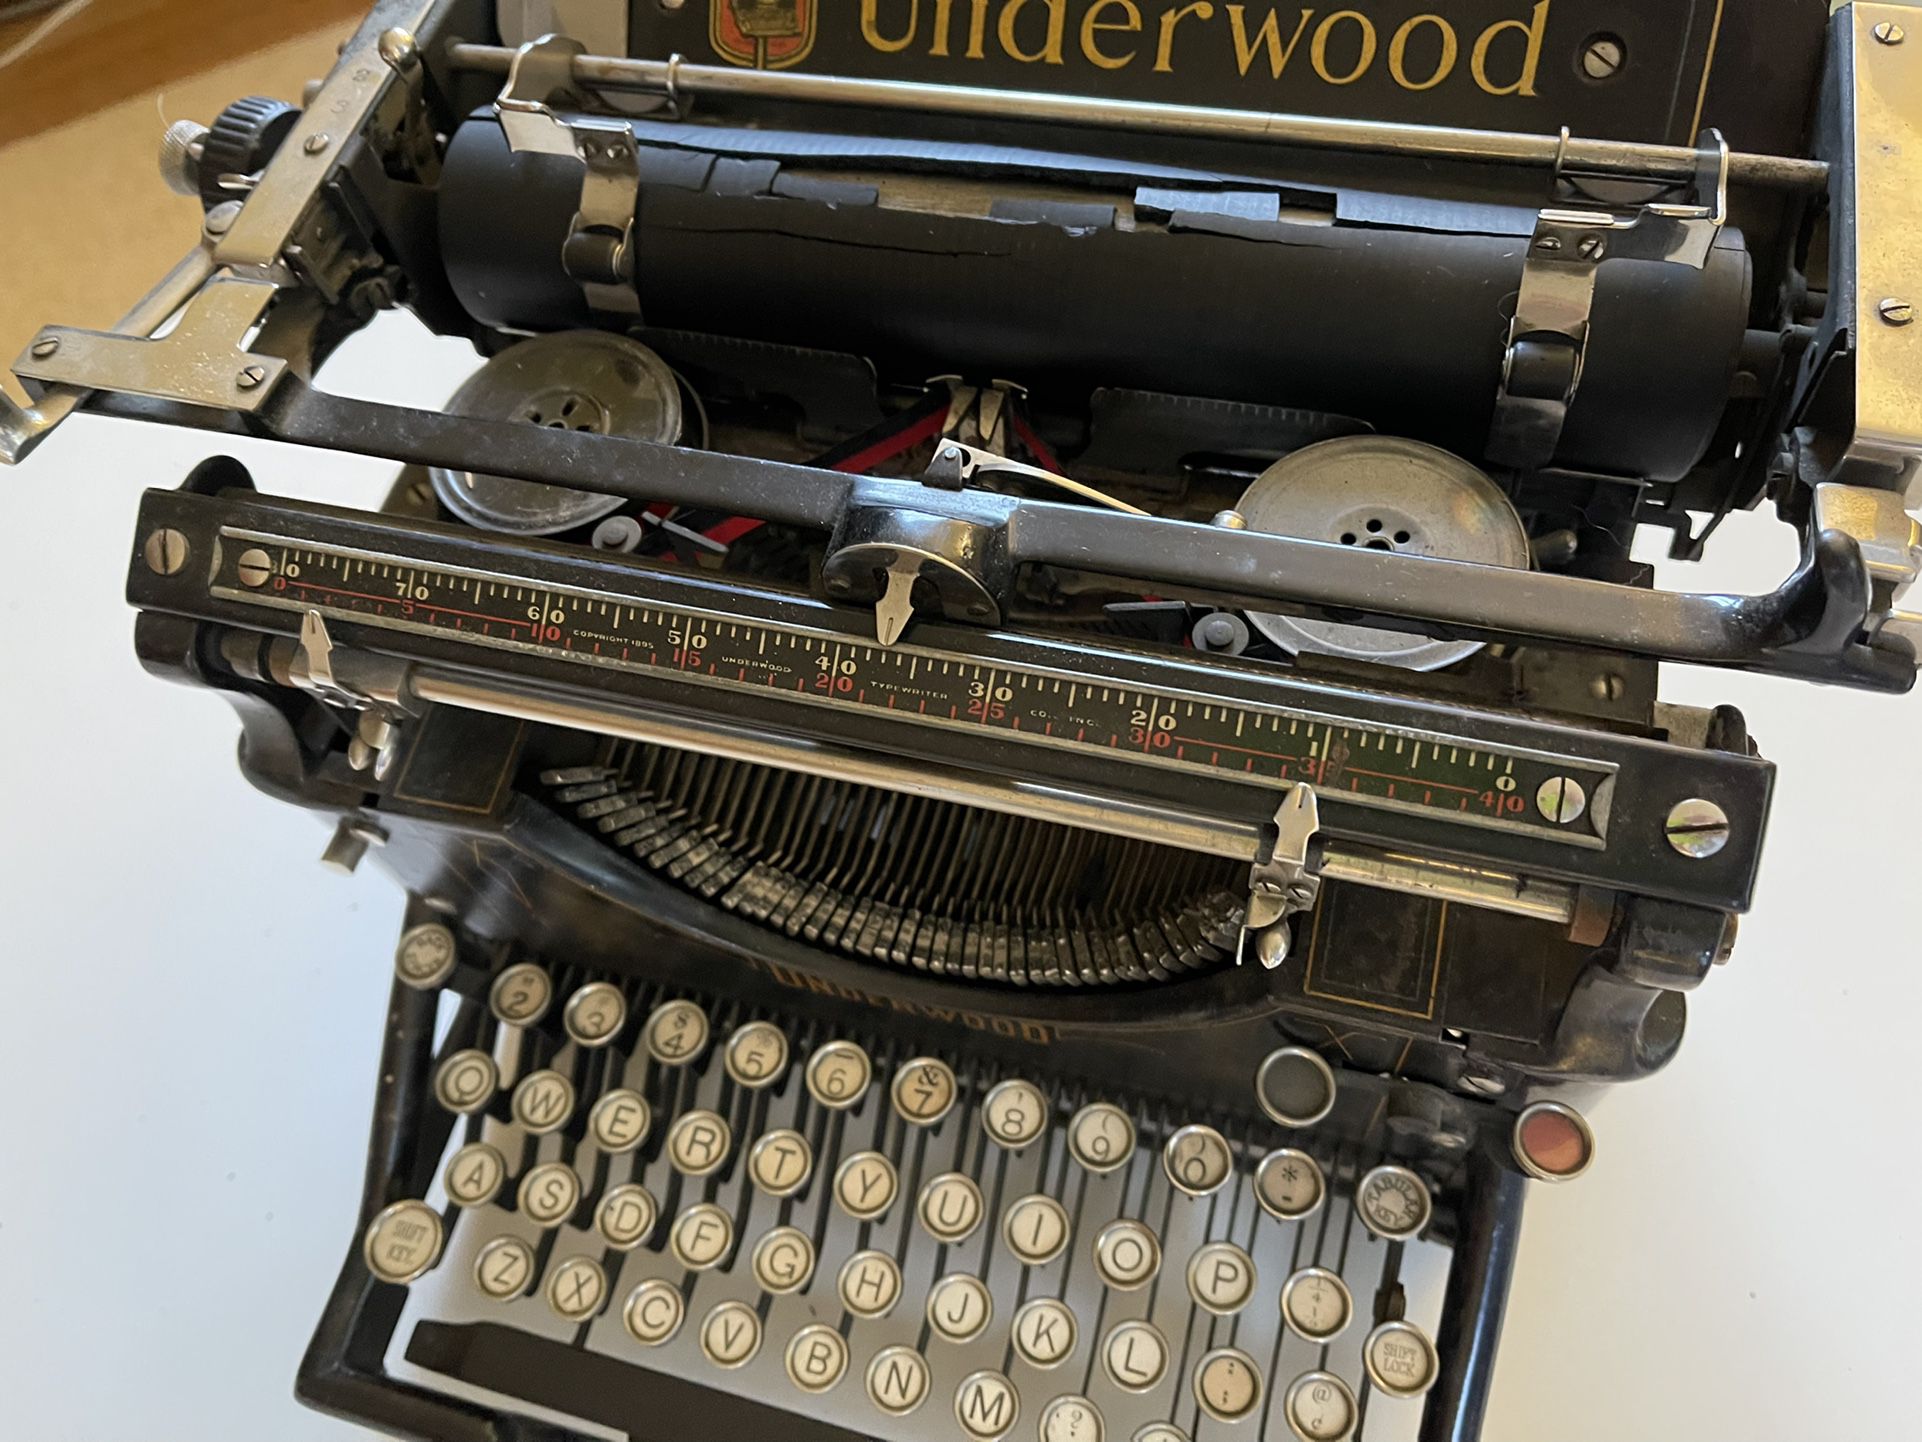 Beautiful Underwood Vintage Typewriter No. 5 “Standard Typewriter” (circa 1920s)